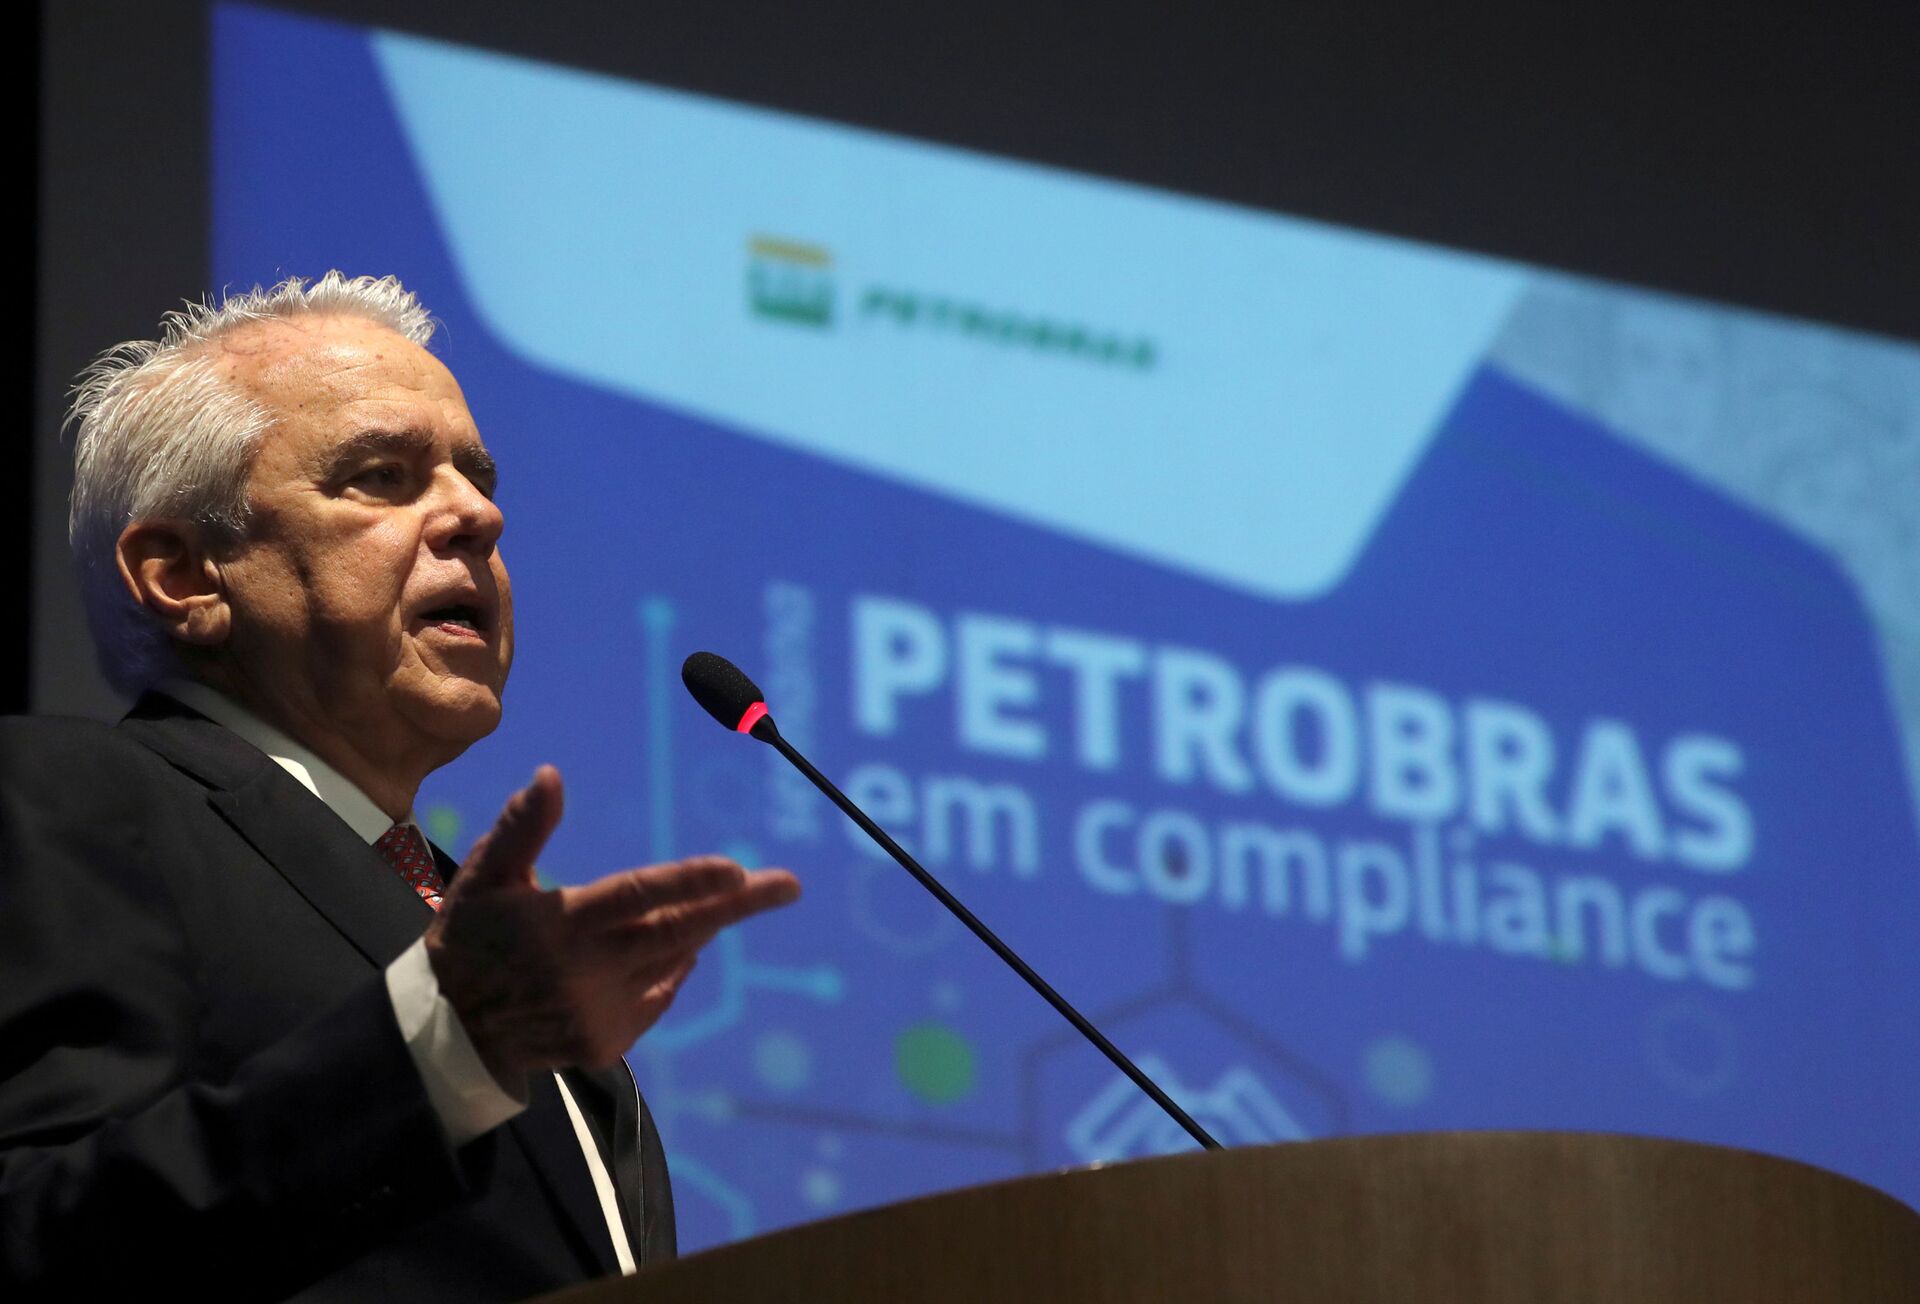 Apesar de preocupações, general no comando da Petrobras pode ser benéfico para a estatal? - Sputnik Brasil, 1920, 13.04.2021